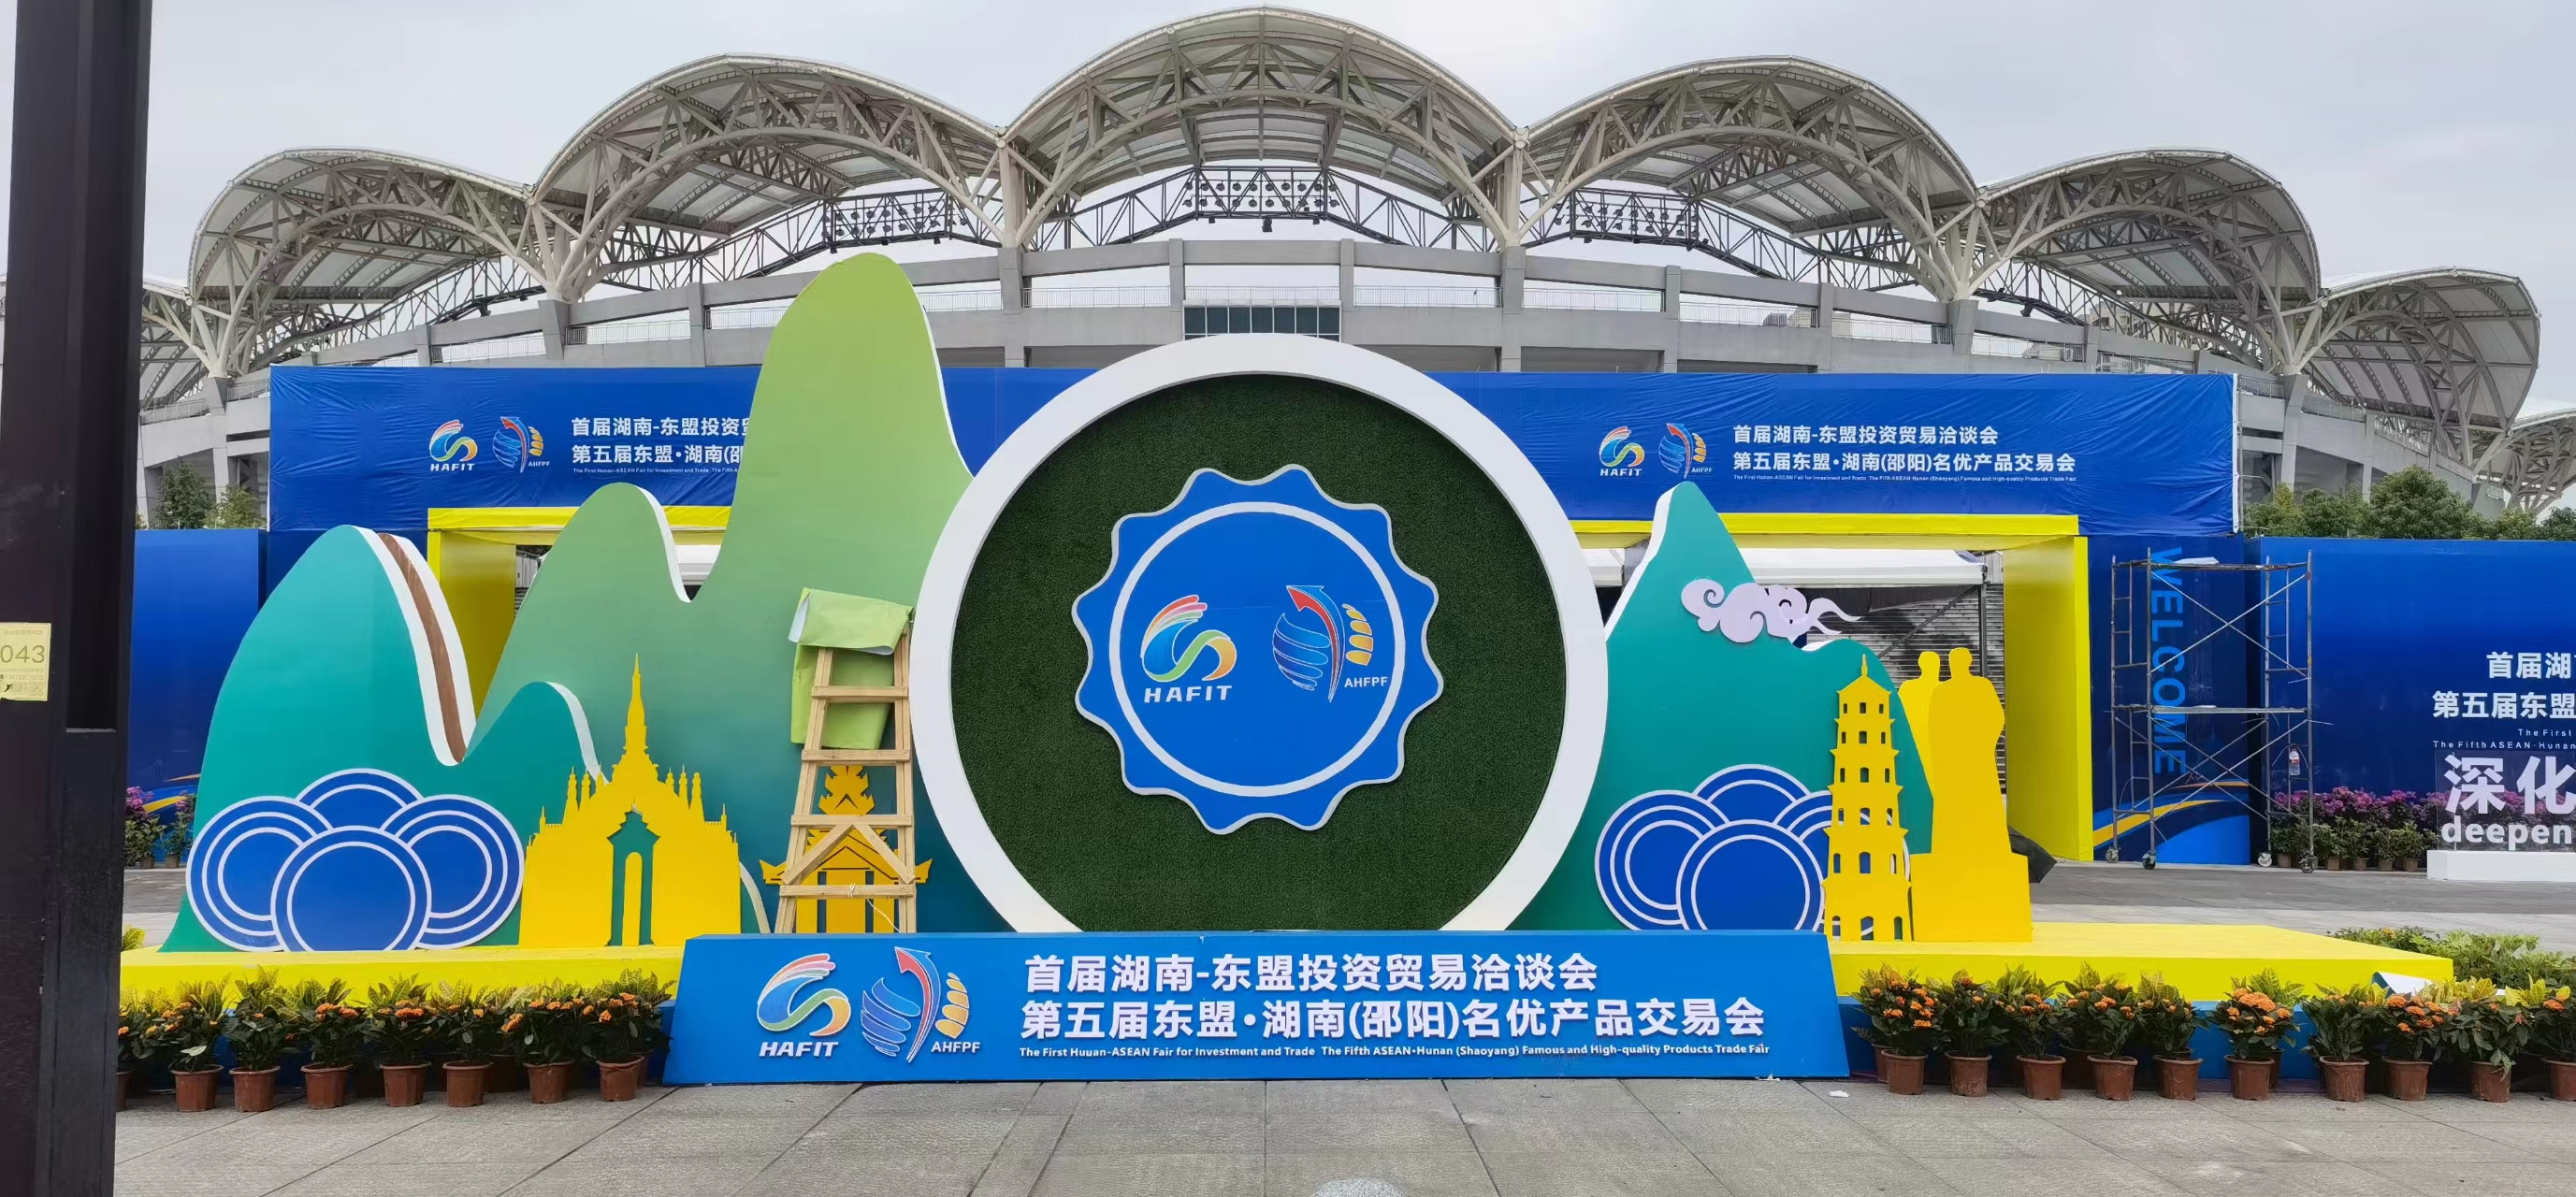 A Prima Fiera di l'Investimentu è u Cummerciu di l'Hunan-ASEAN hè stata aperta in Shaoyang